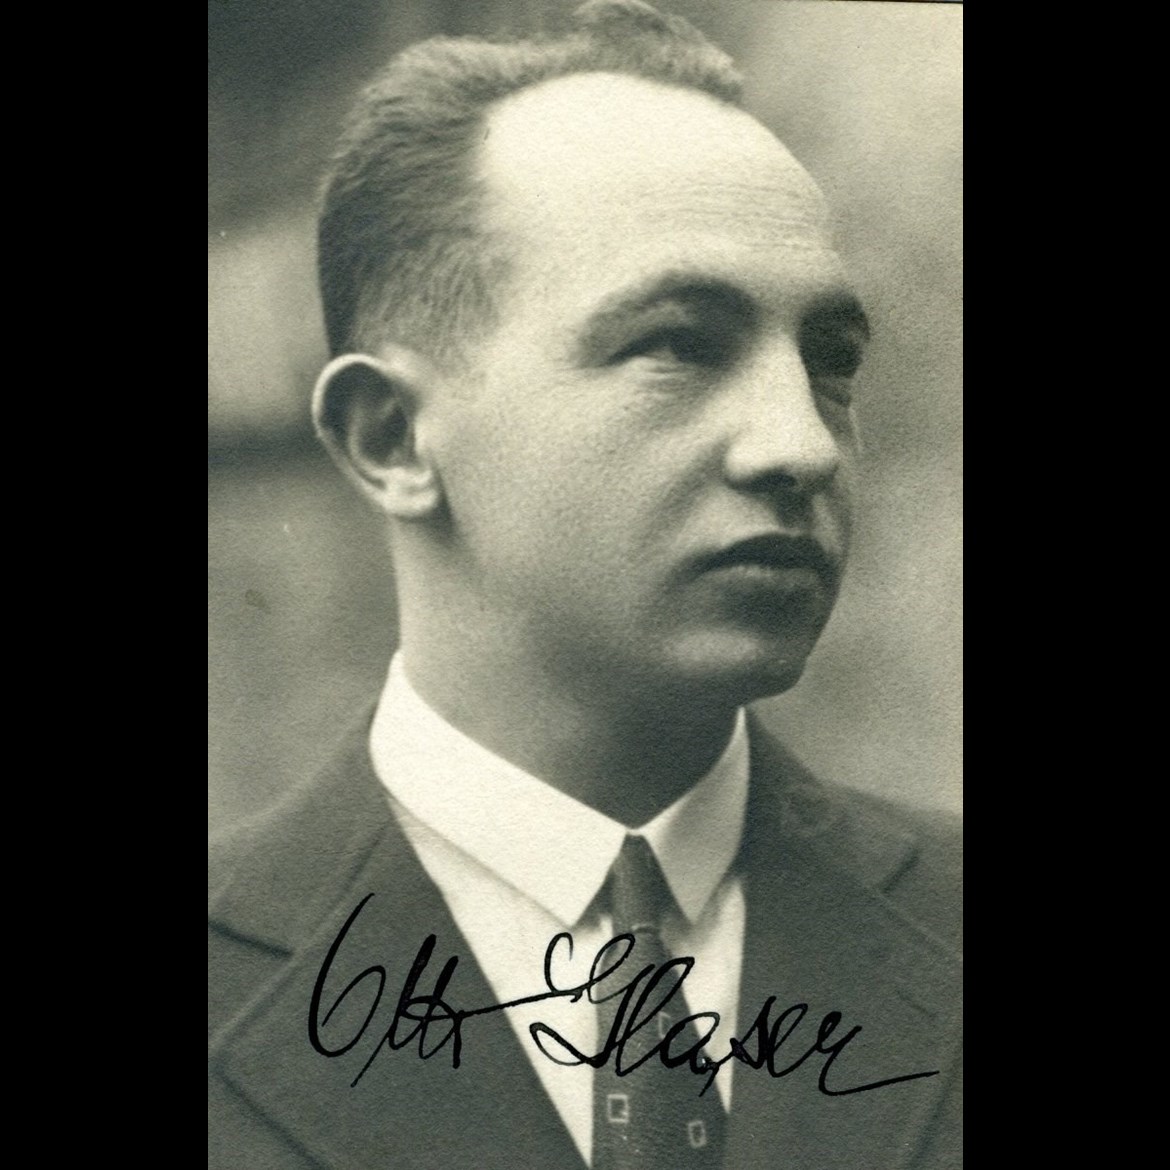 JUDr. Otto Glaser